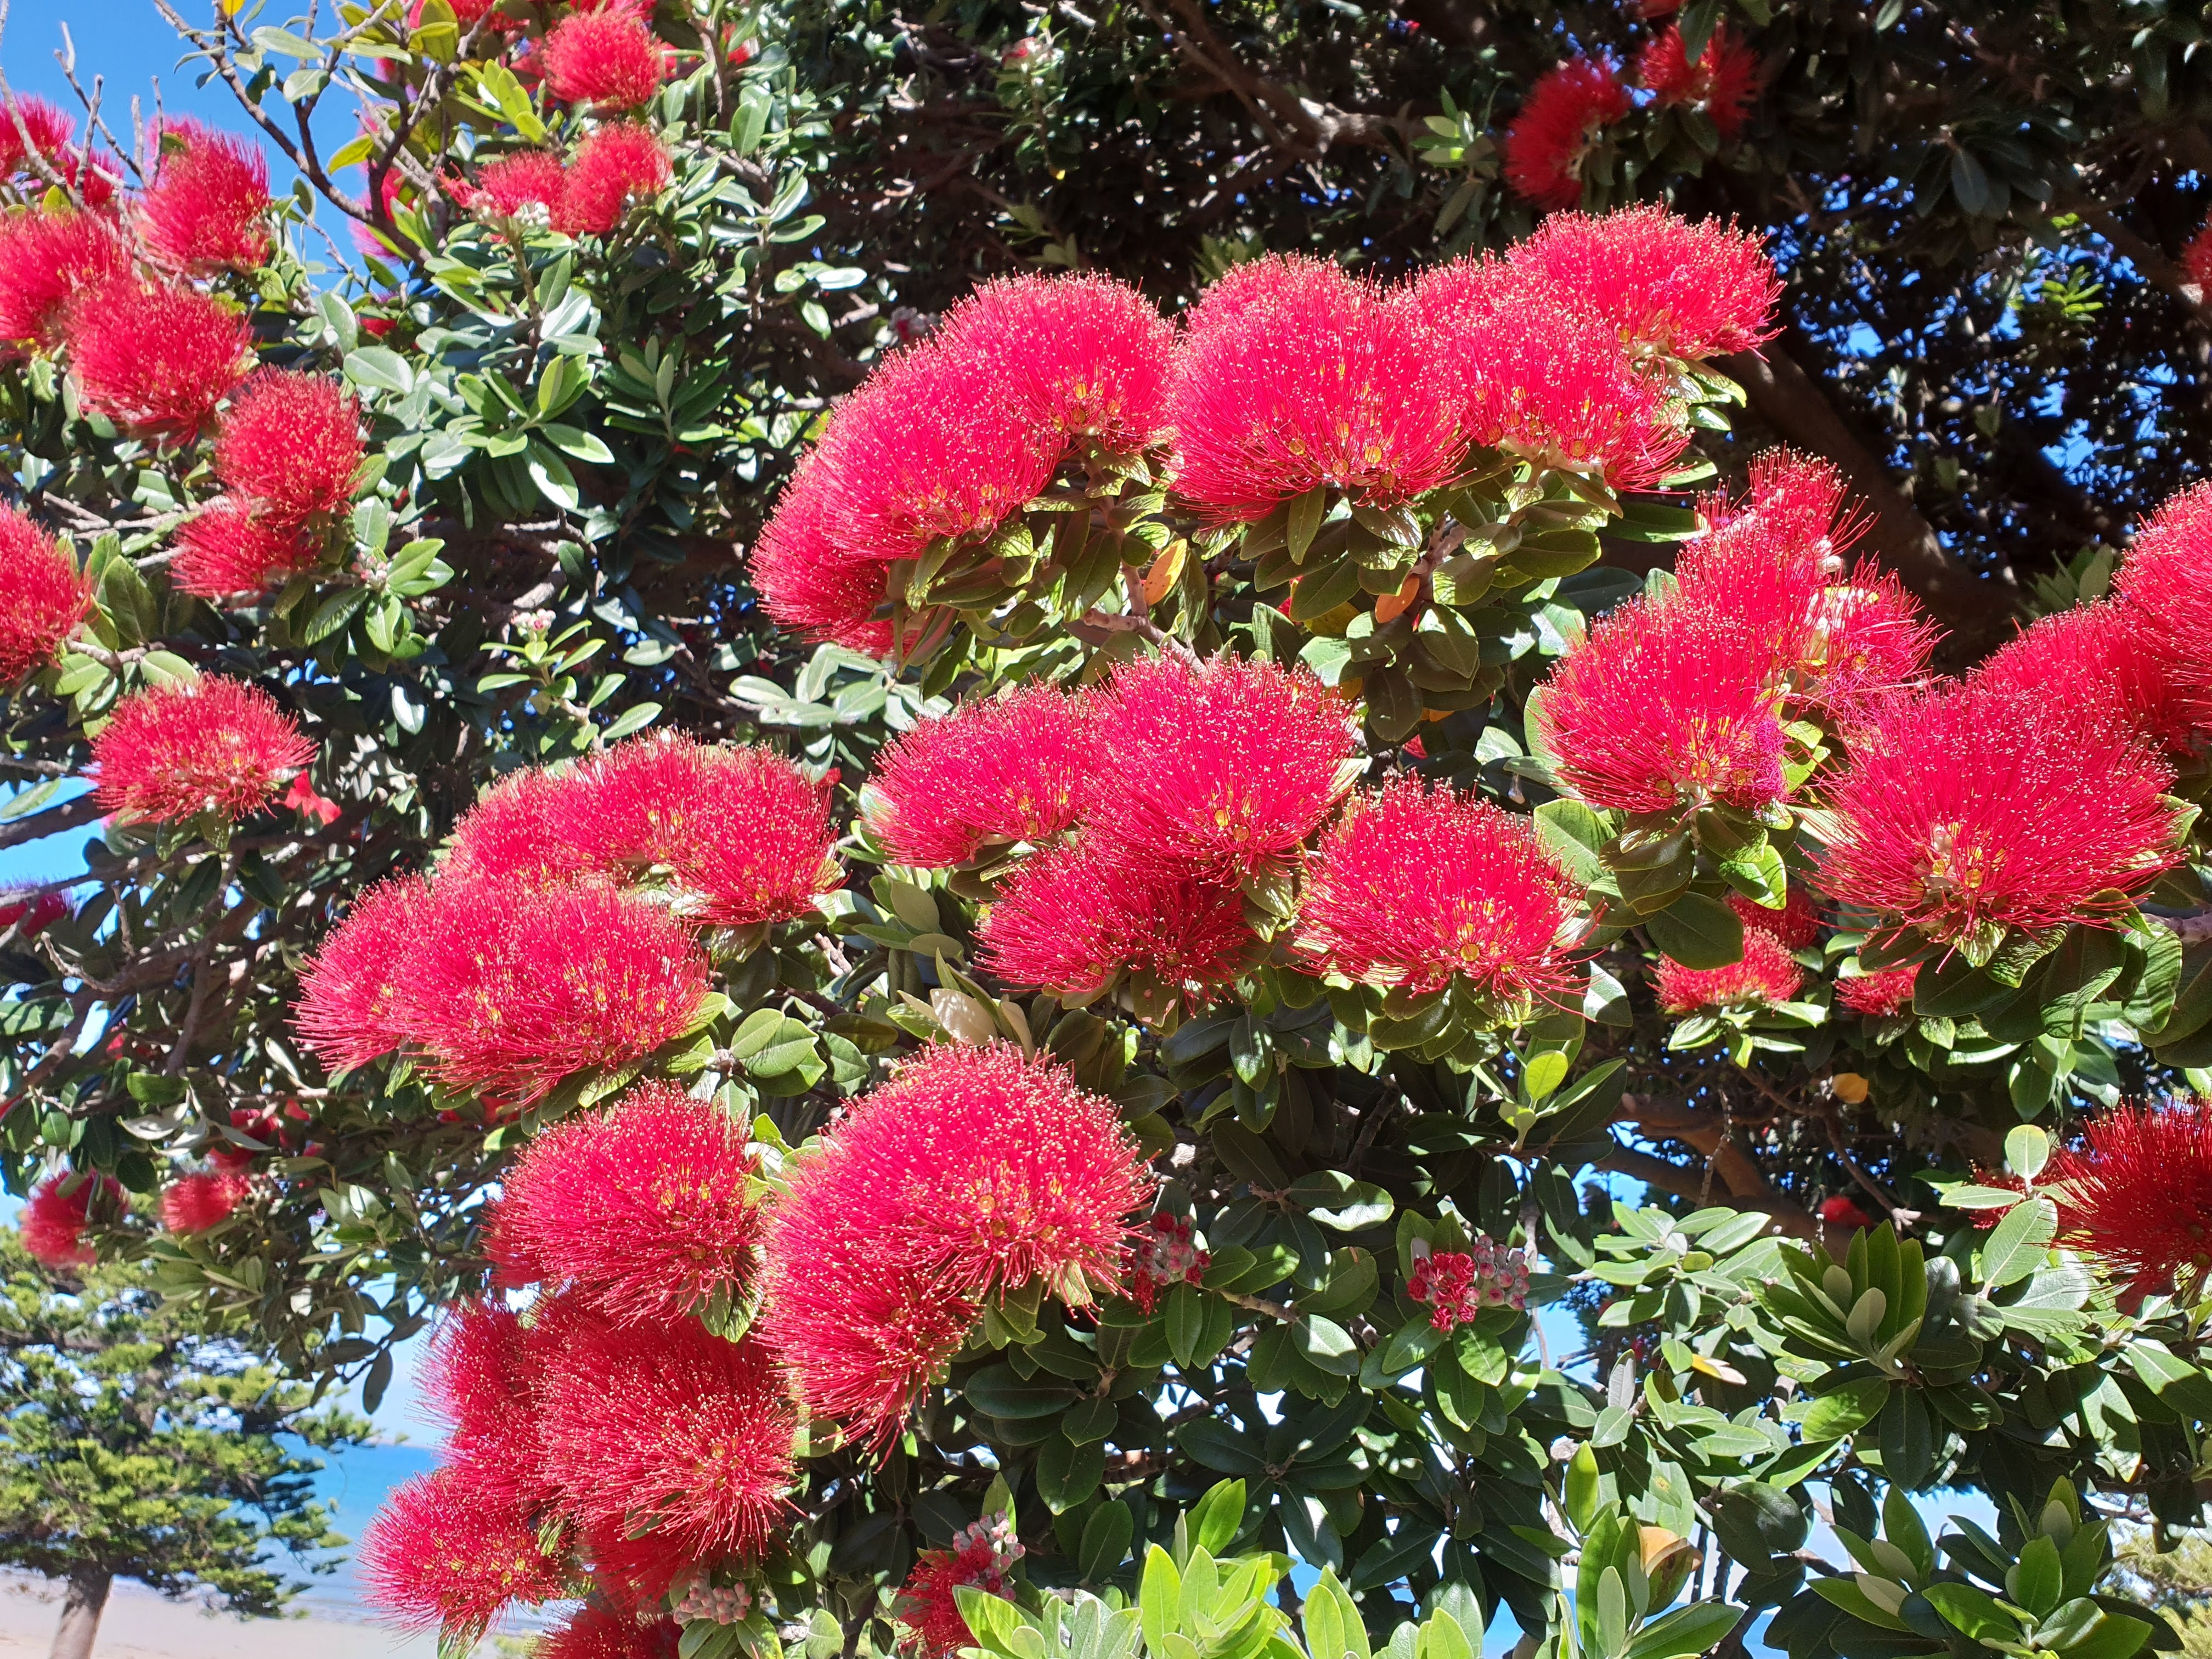 クリスマスの木 “ポフツカワ” はオーストラリアでも咲いていた？